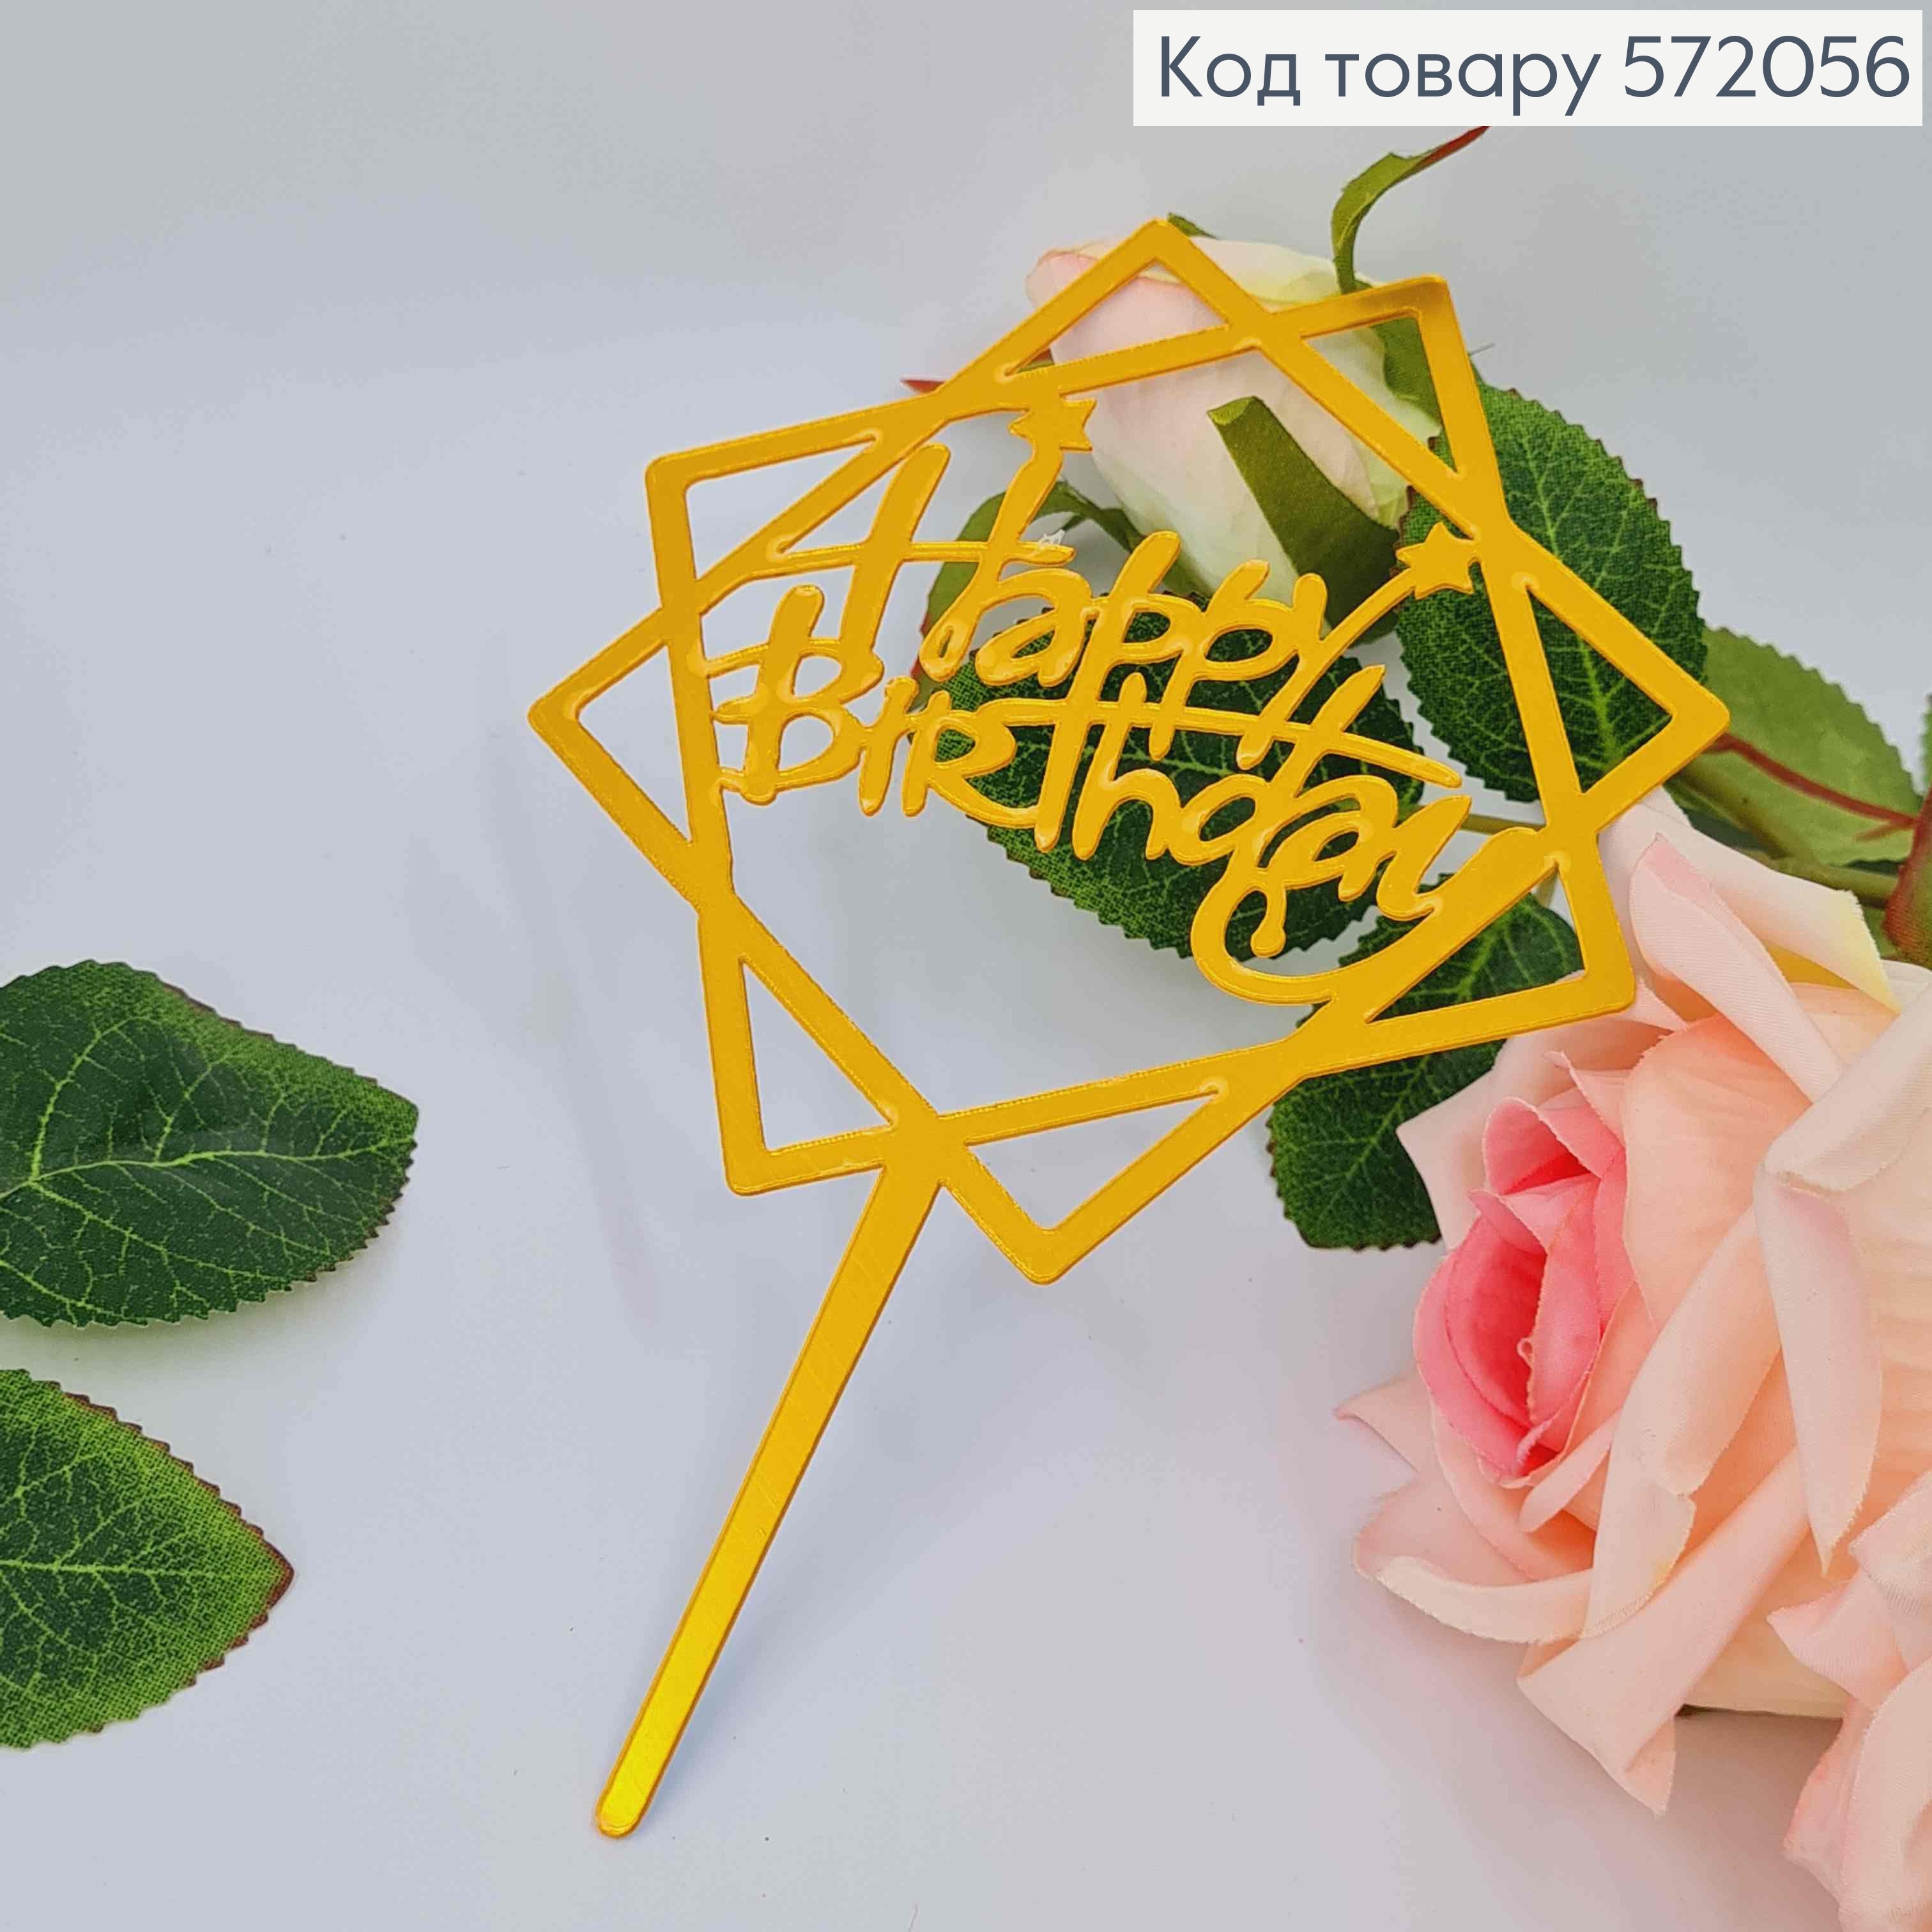 Топпер пластиковый, "Happy Birthday", Золотого цвета, на зеркальной основе, с фигурной звездой, 15см 572056 фото 2